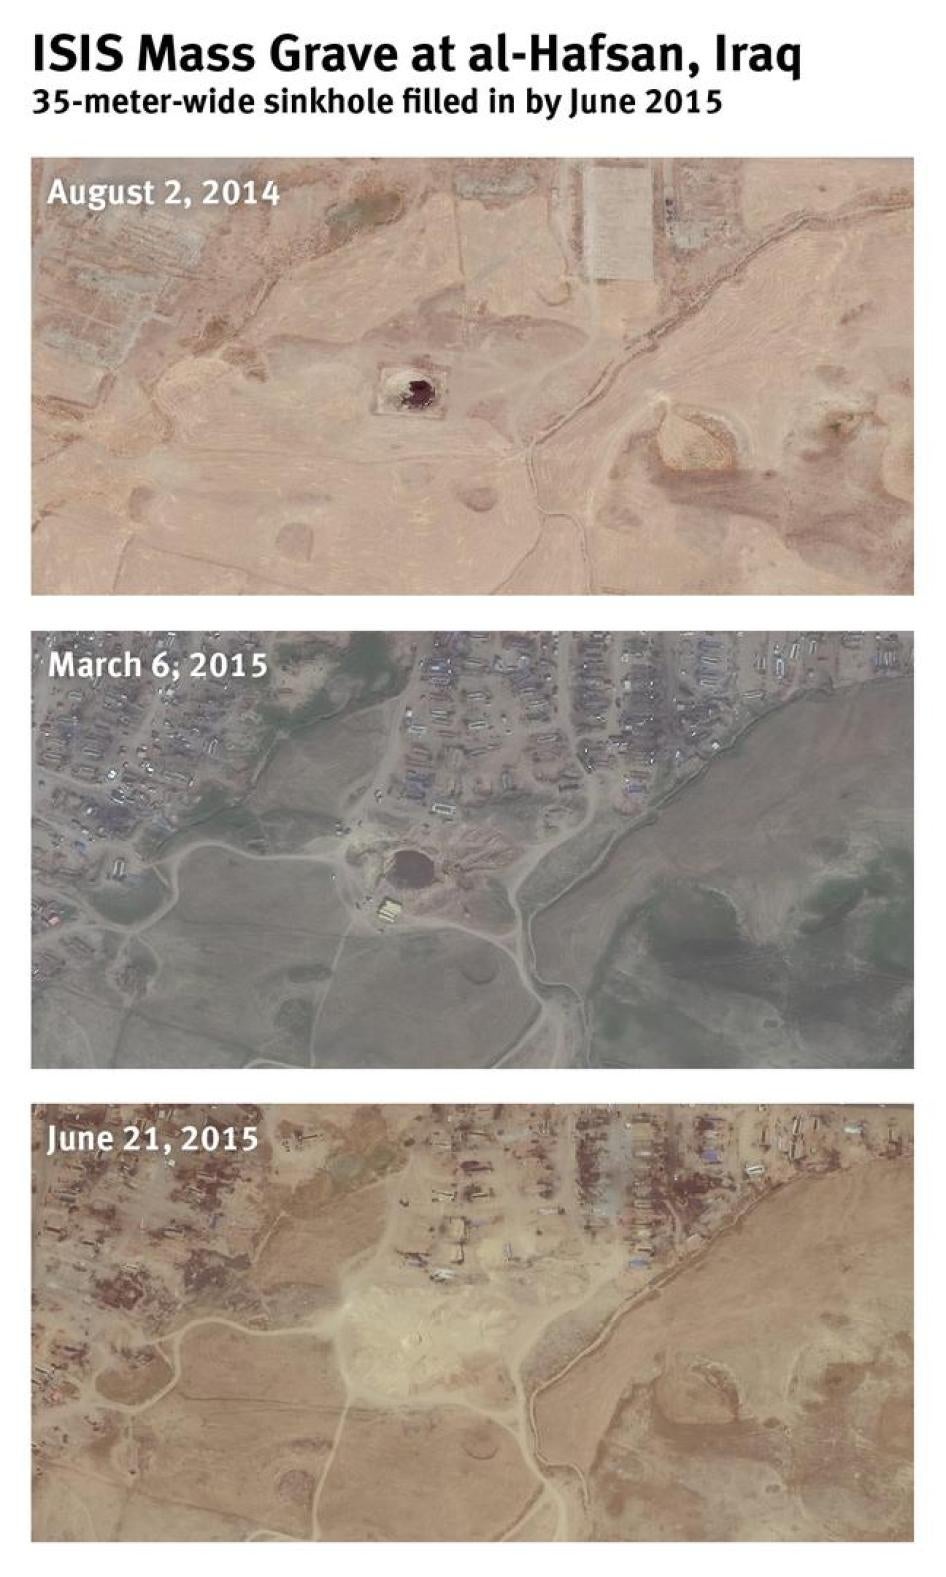 صور من الأقمار الصناعية تظهر حفرة الخفسة الطبيعية وهي تُملأ في يونيو/حزيران 2015.